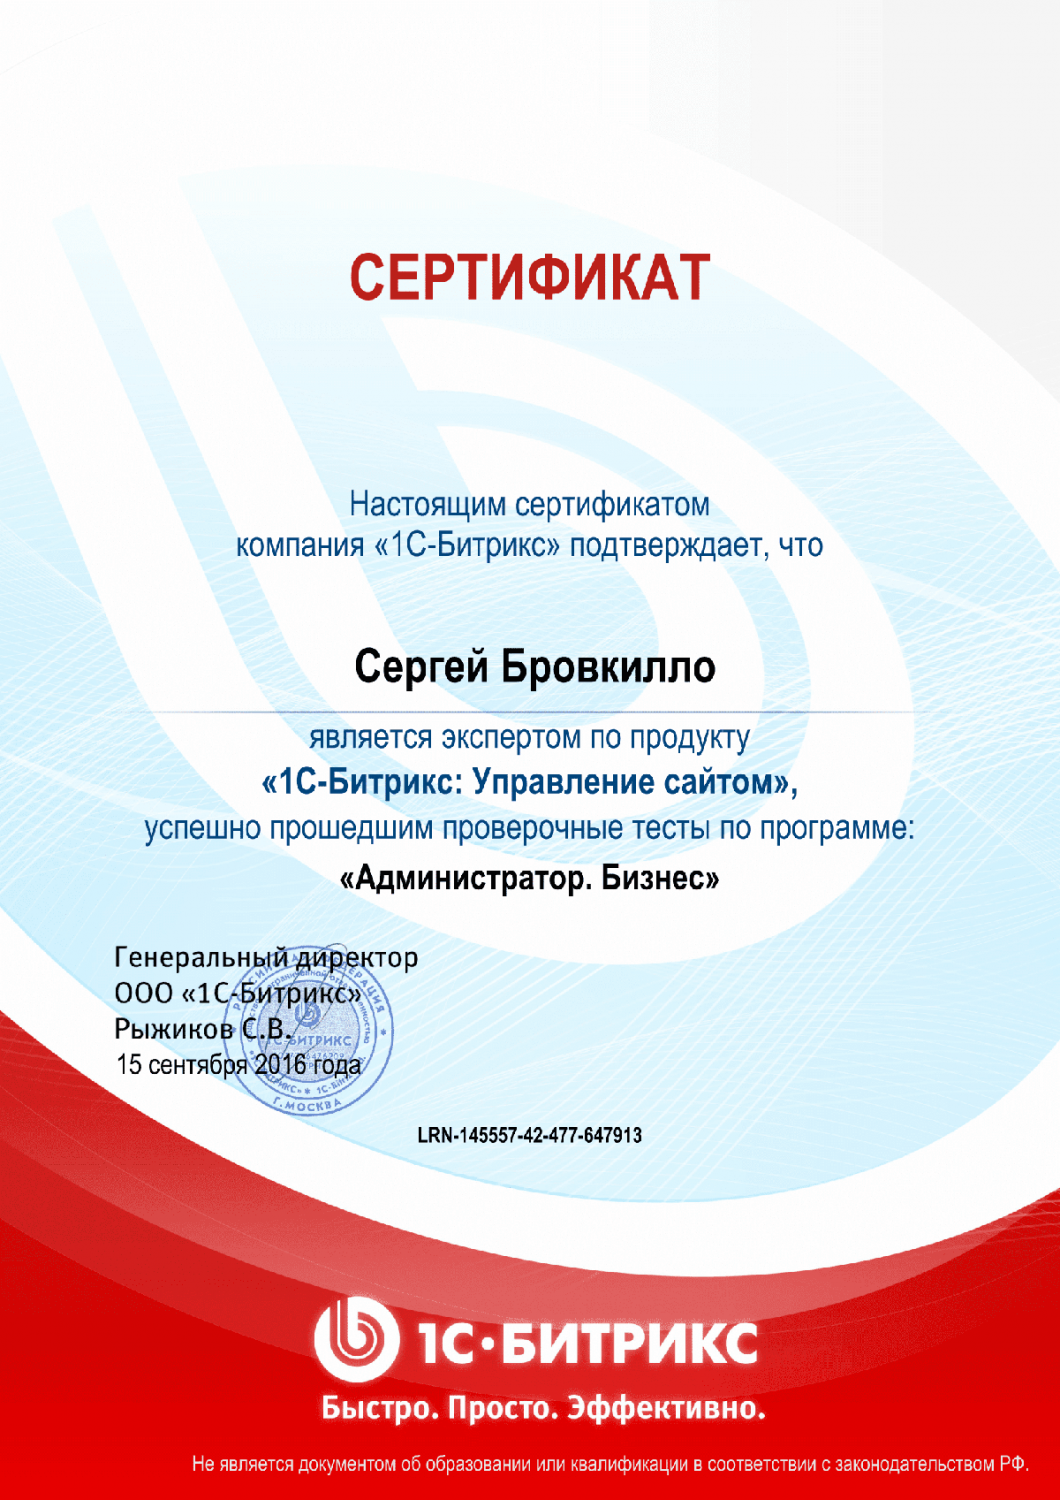 Сертификат эксперта по программе "Администратор. Бизнес" в Челябинска